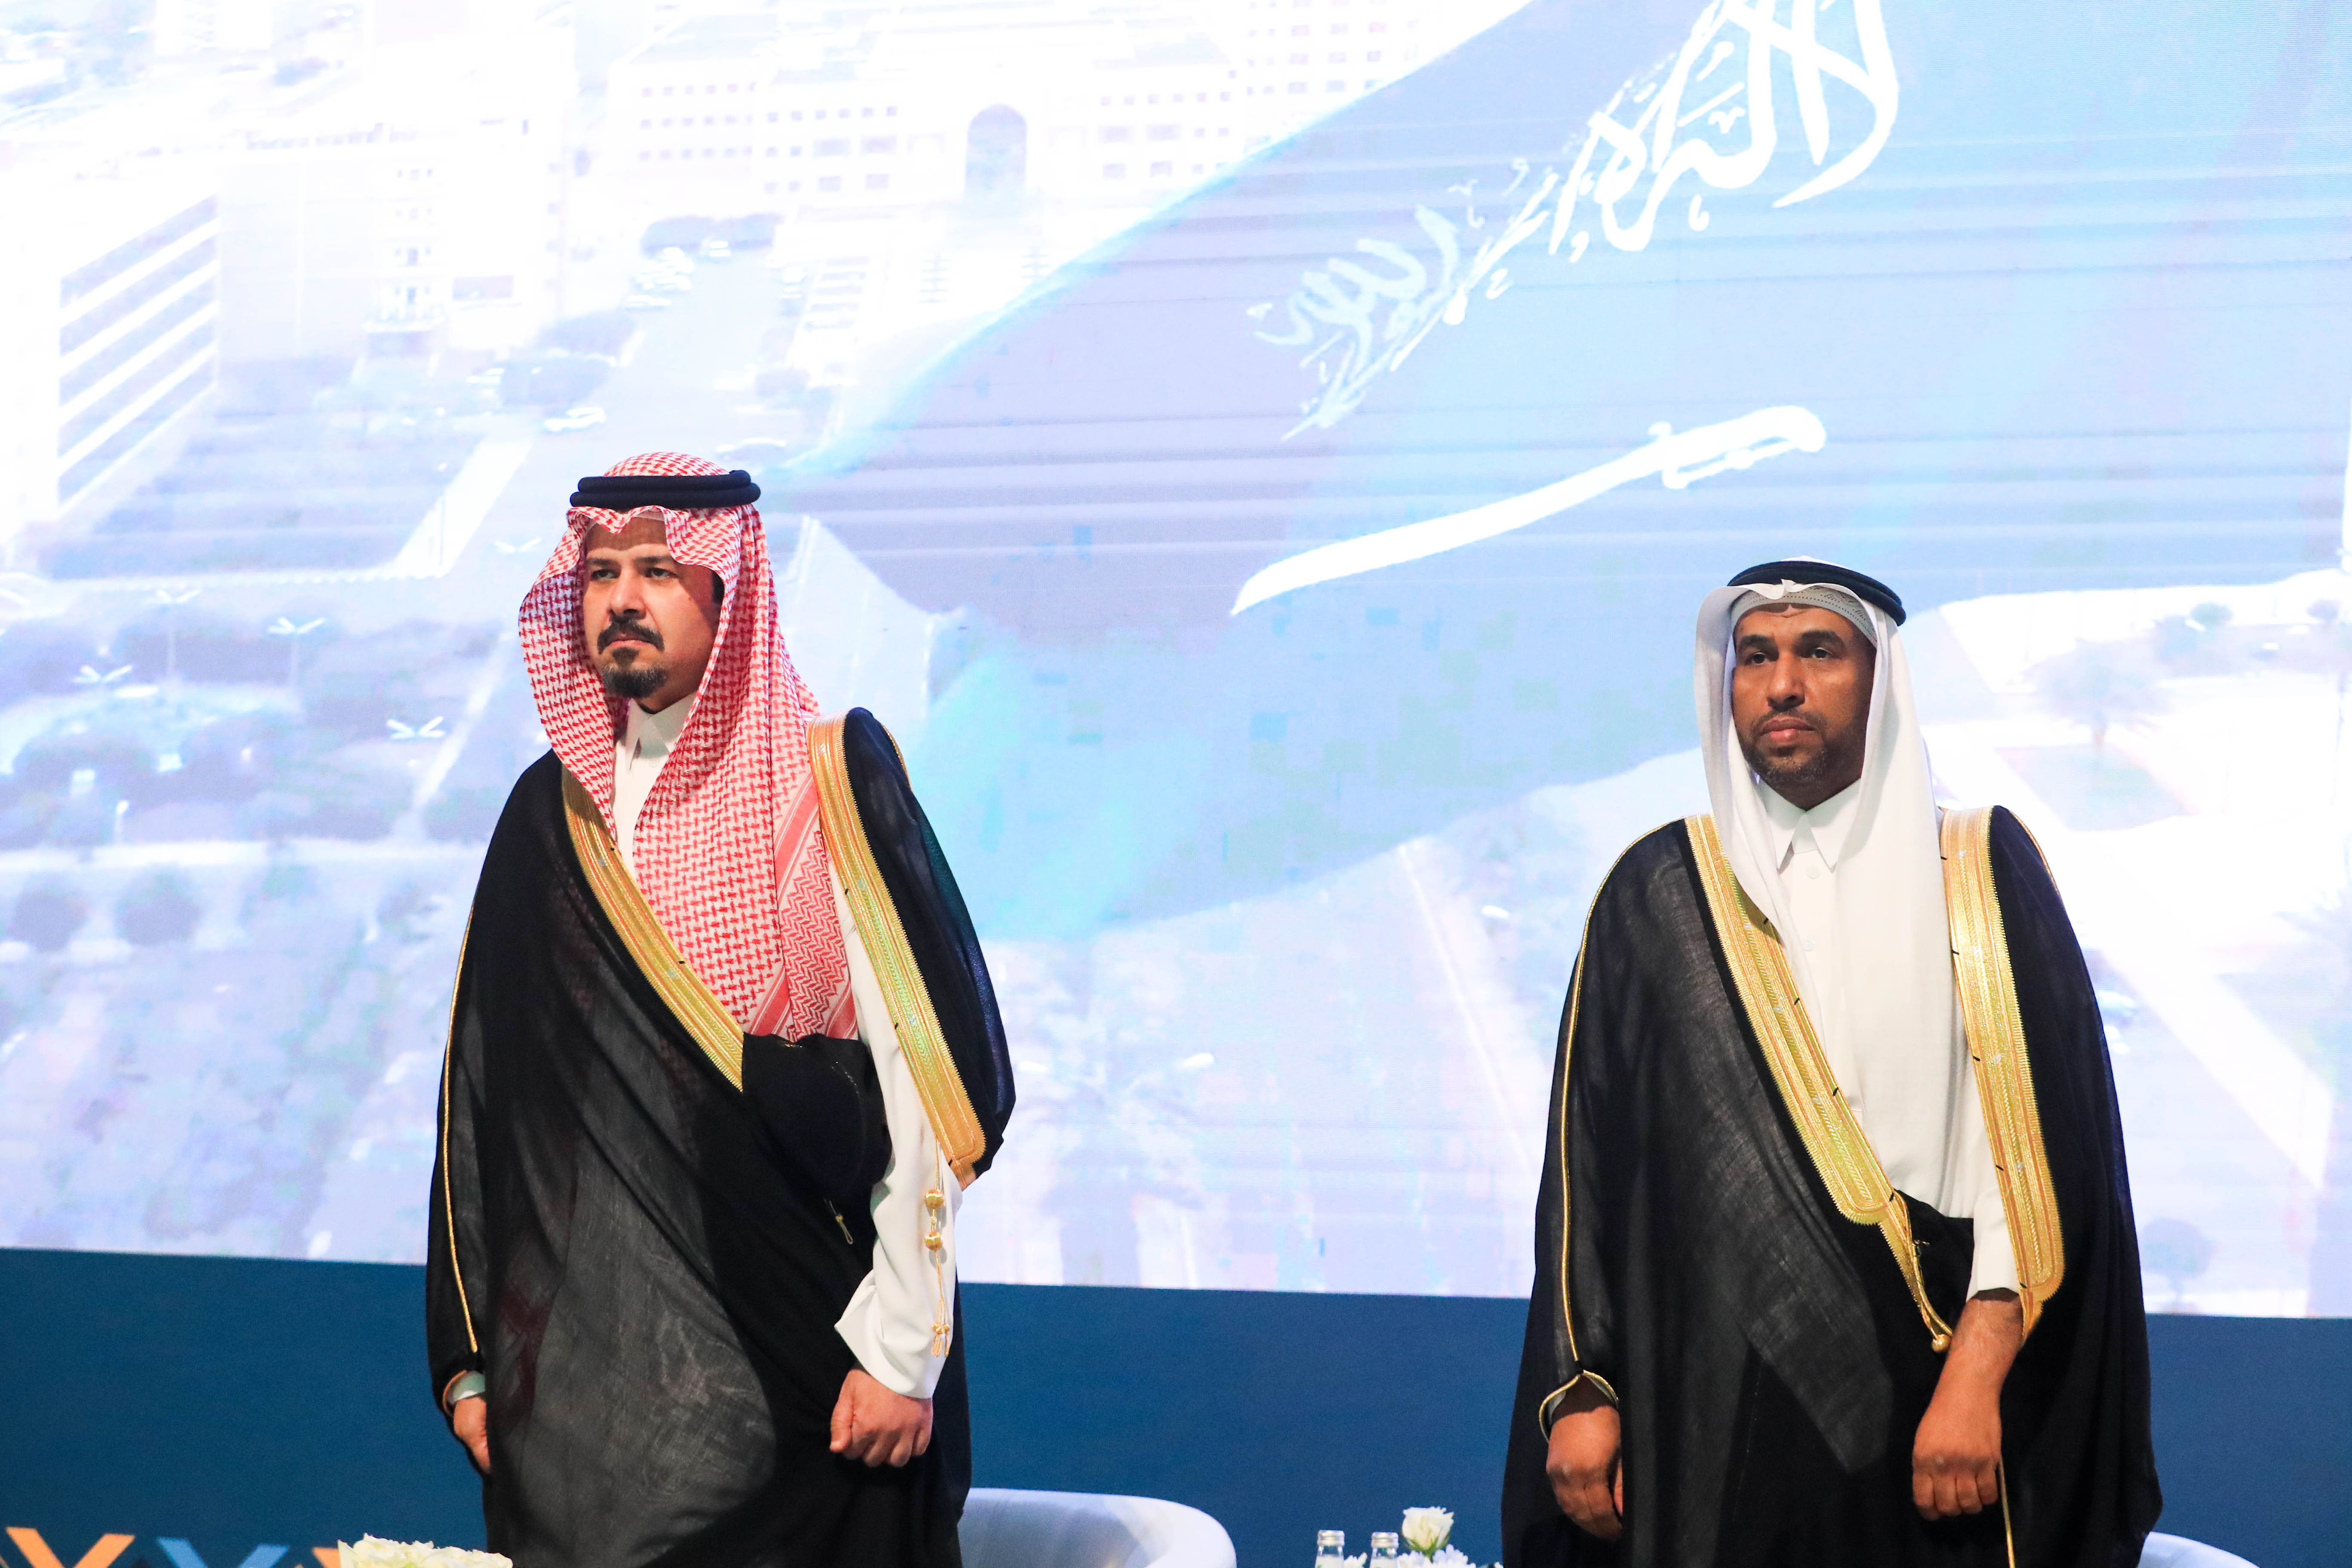 رعى صاحب السمو الملكي الأمير سلمان بن سلطان بن عبد العزيز، أمير منطقة المدينة المنورة، حفل تخريج الدفعة الستين.